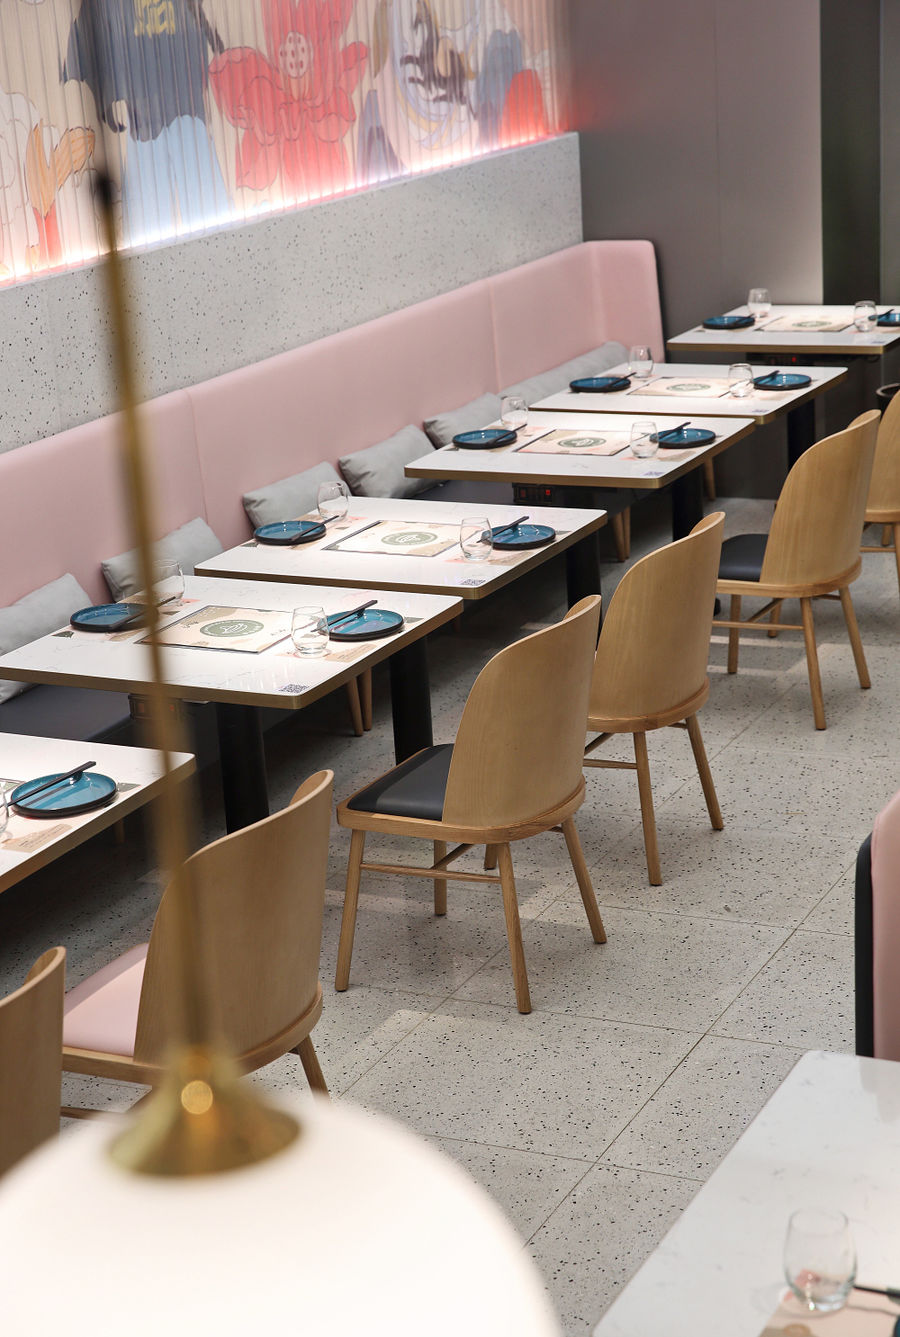 深圳餐厅设计，古典主义新玩法，打造抢眼的火锅店面！